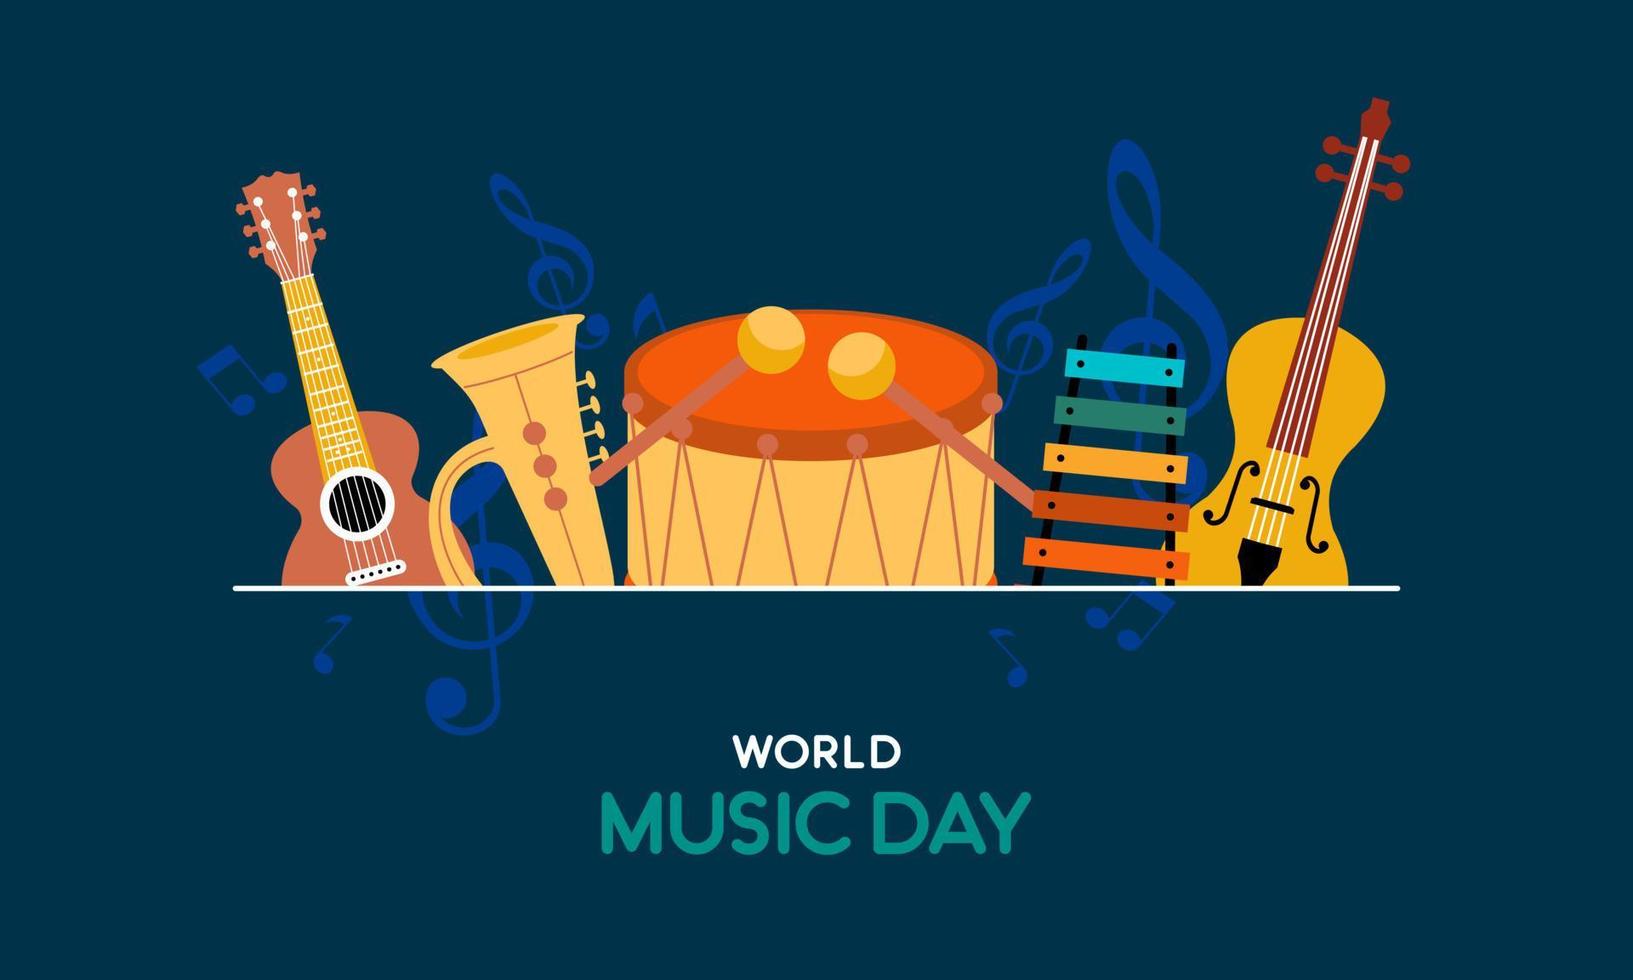 monde la musique journée avec musical instruments vecteur